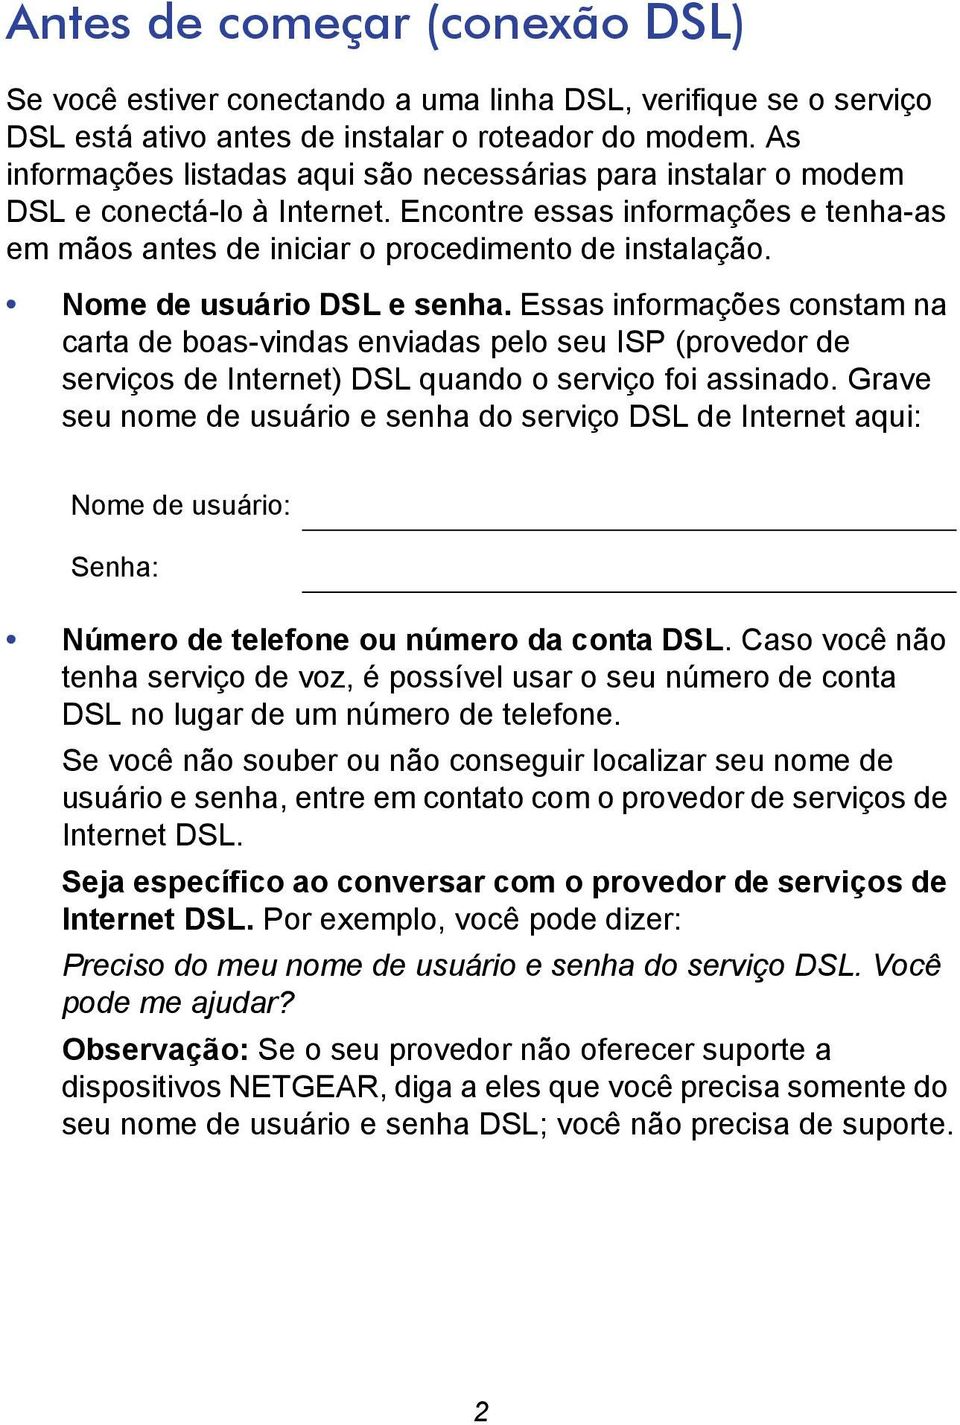 Nome de usuário DSL e senha. Essas informações constam na carta de boas-vindas enviadas pelo seu ISP (provedor de serviços de Internet) DSL quando o serviço foi assinado.